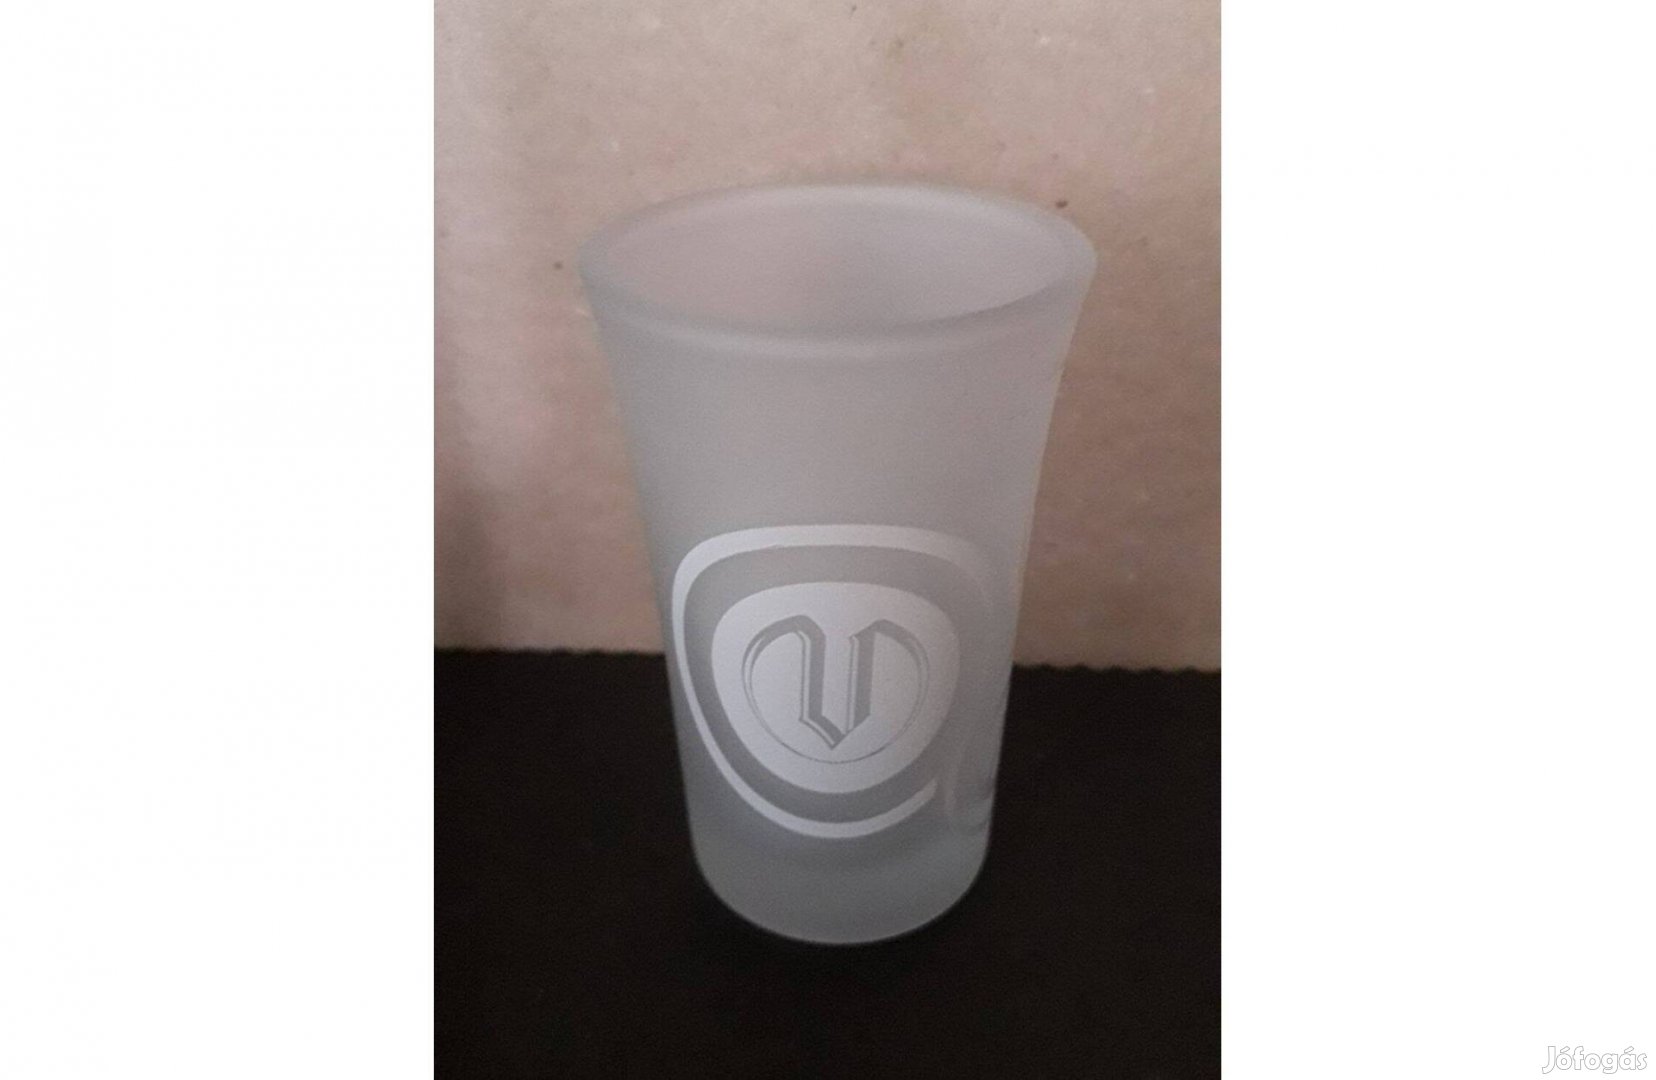 Vilmos pálinkás röviditalos pohár új hibátlan 7*4,5 cm